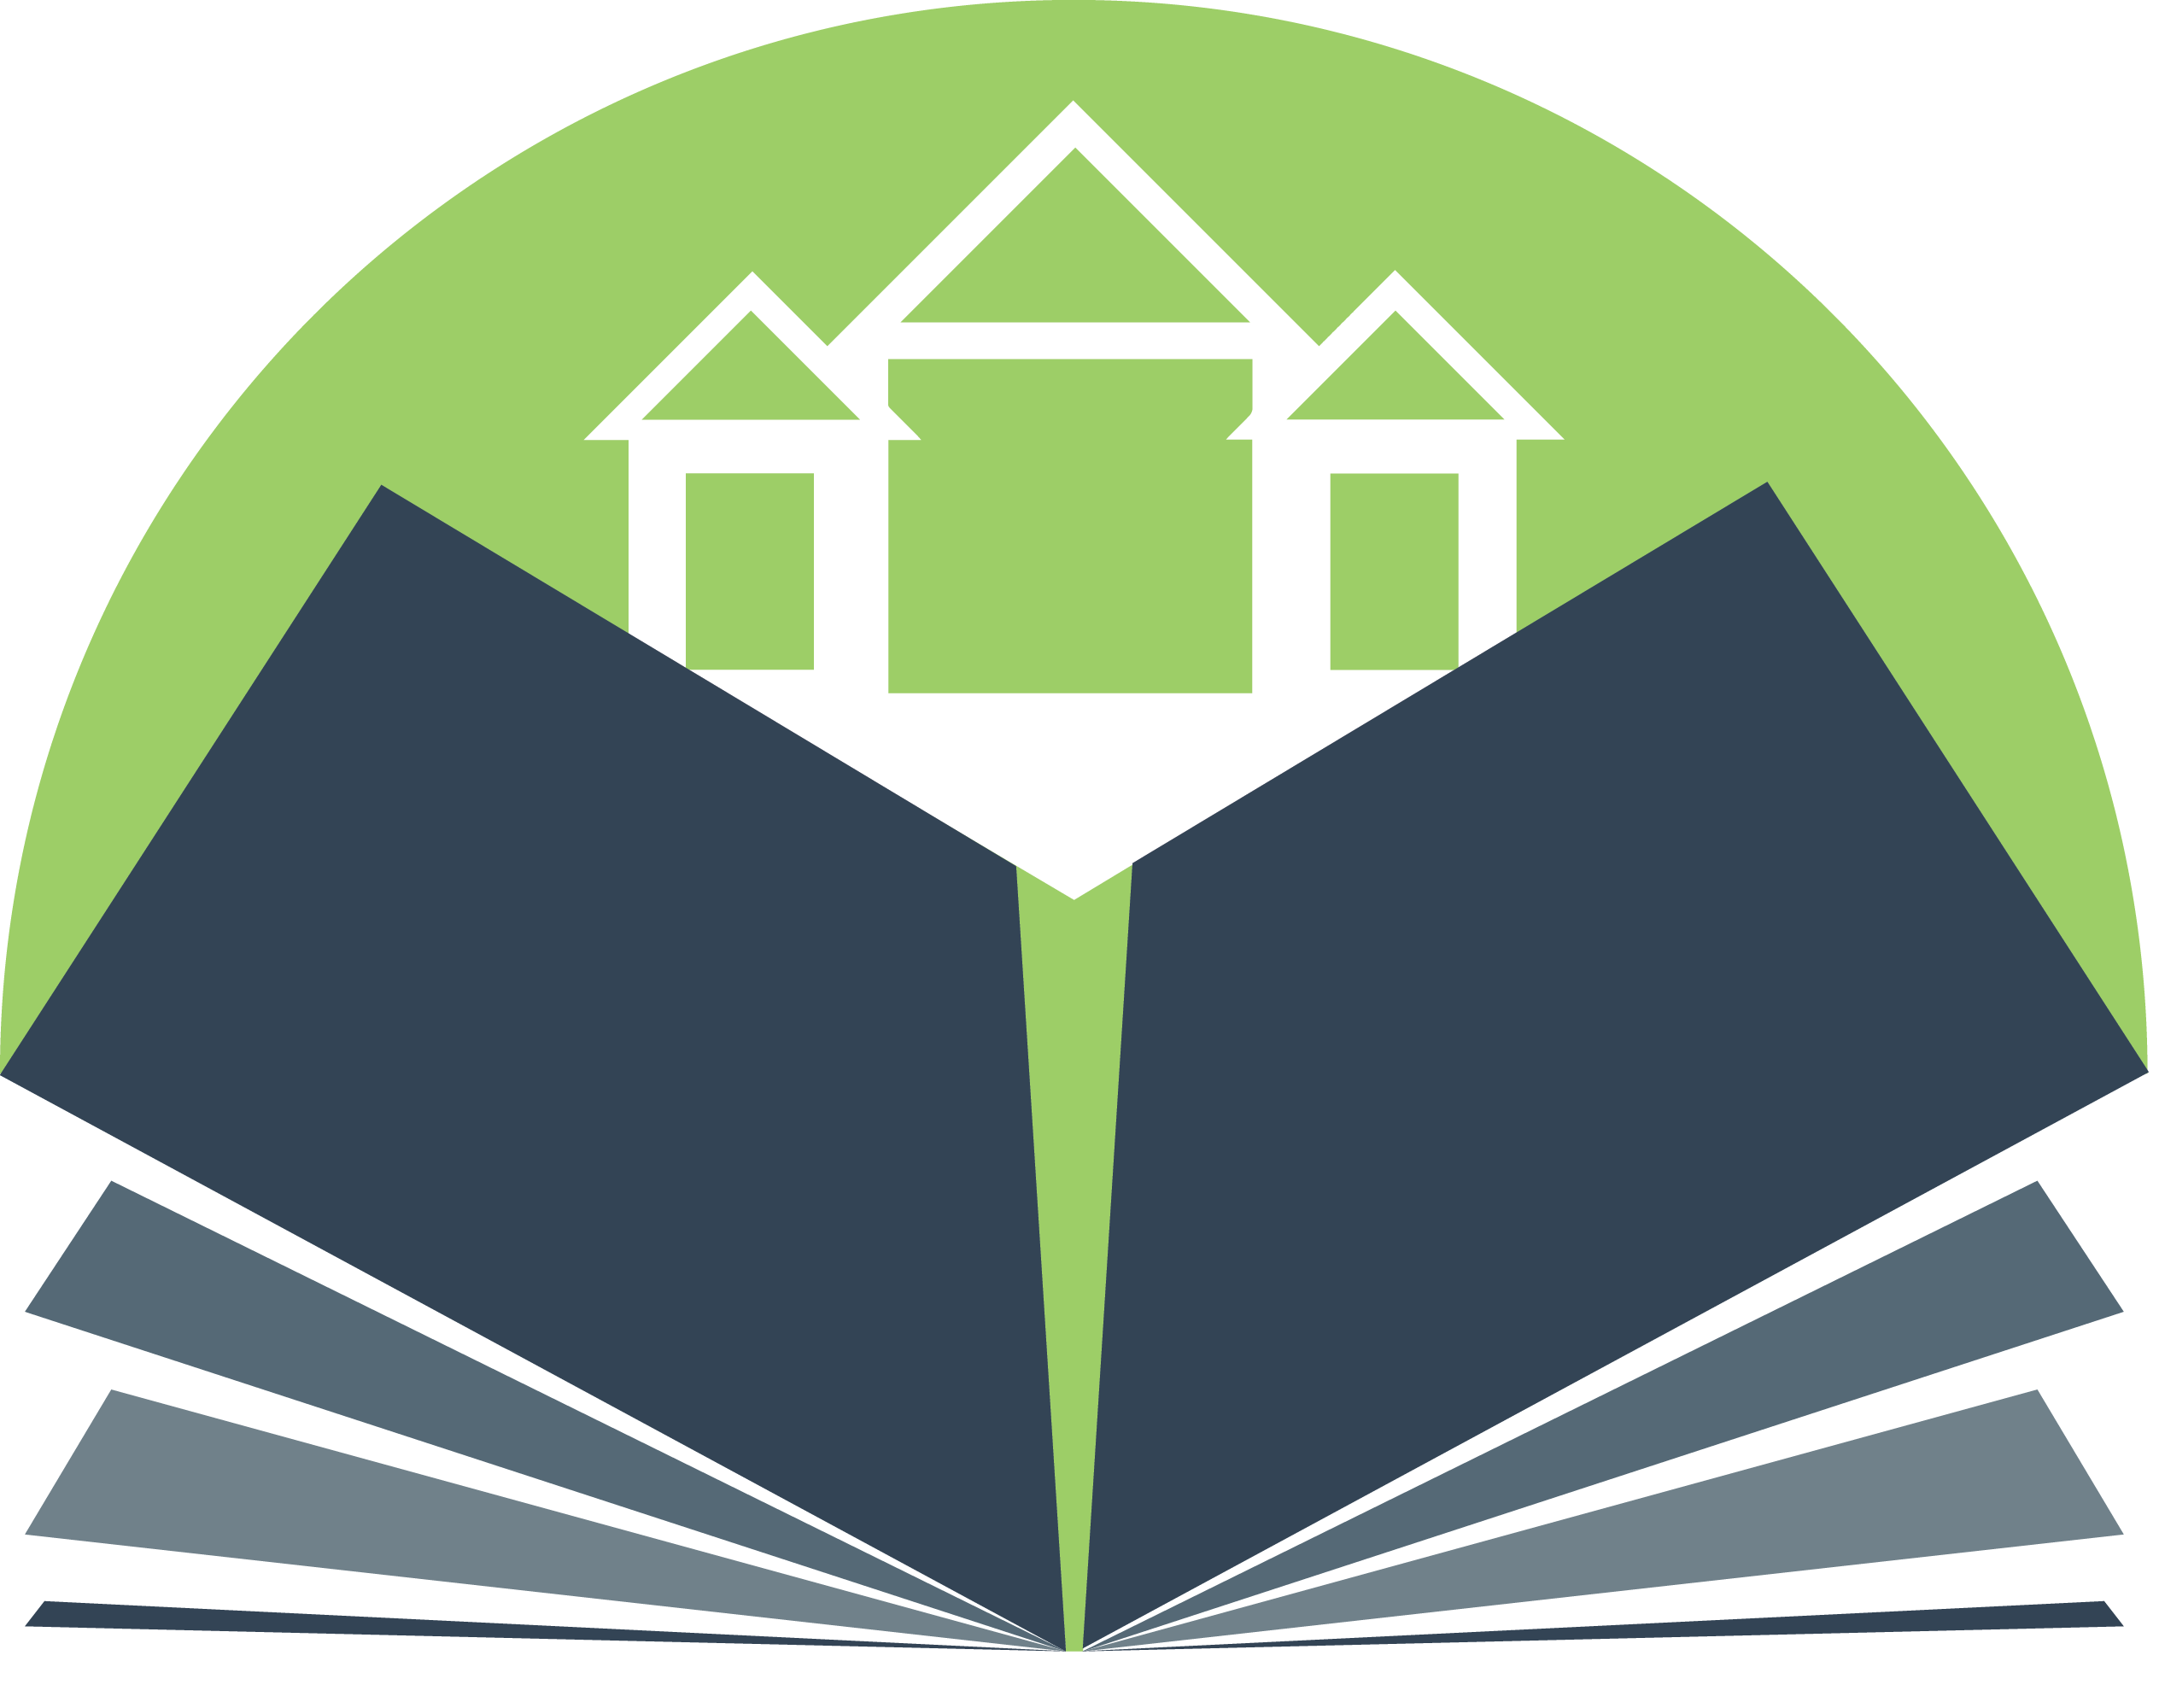 Libraray Logo - Library logo png 4 PNG Image